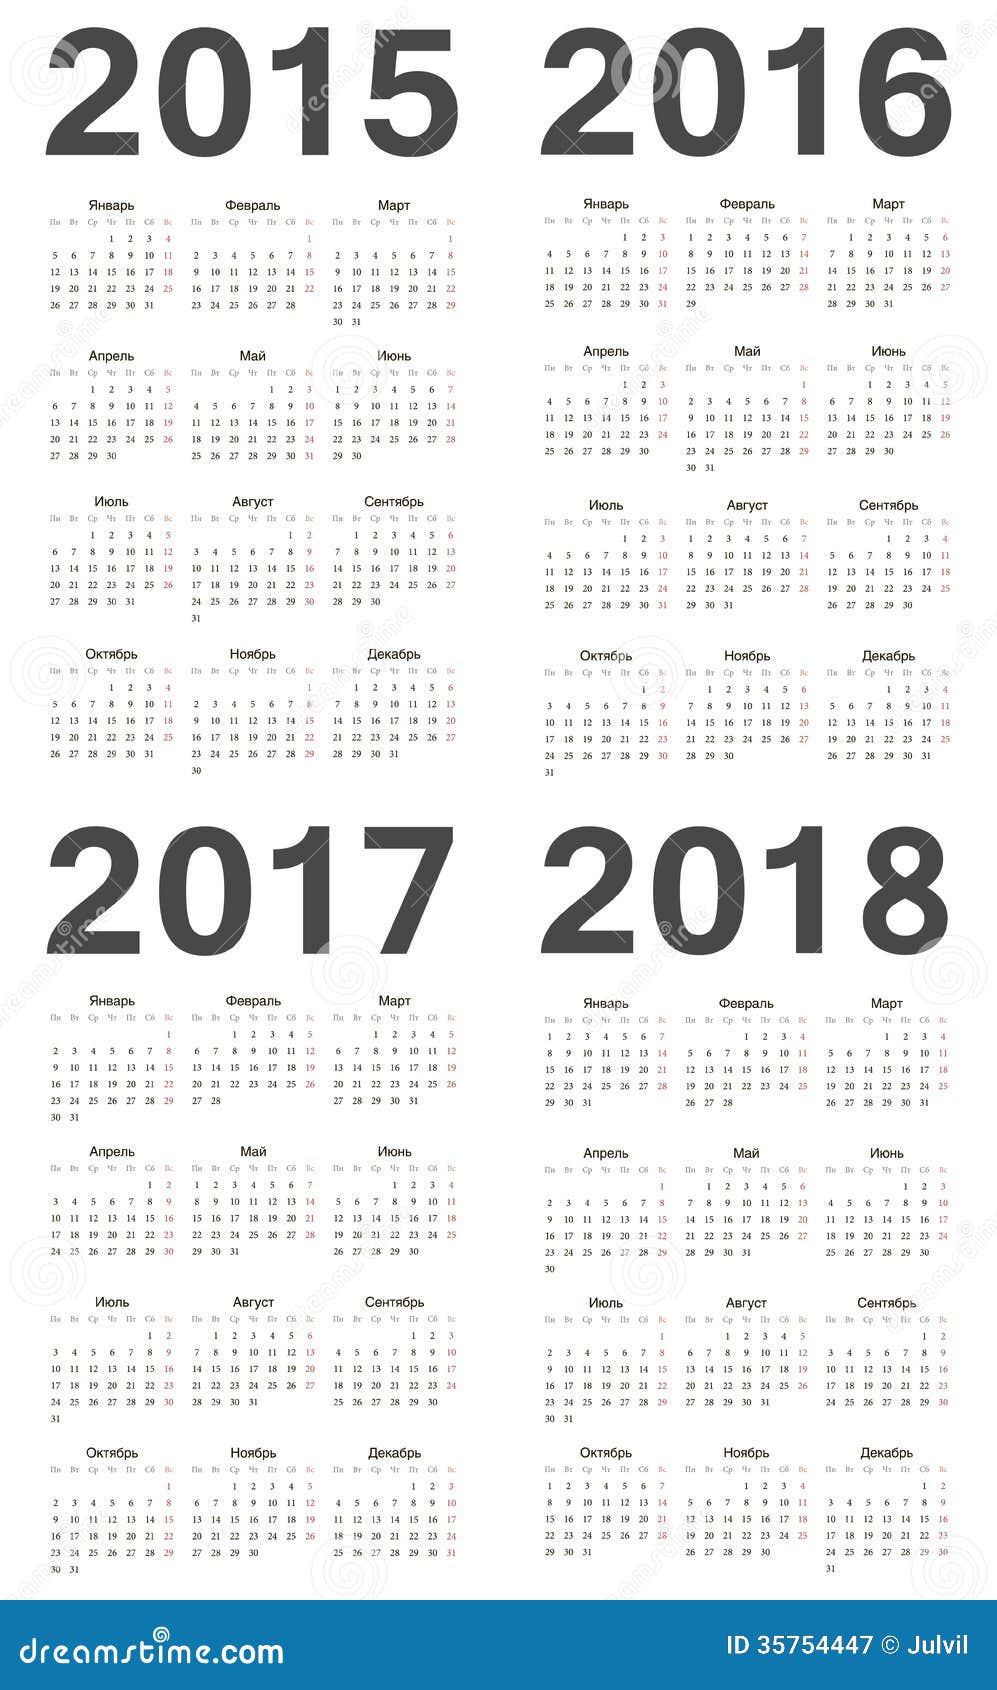 календарь 2016 2017 год скачать